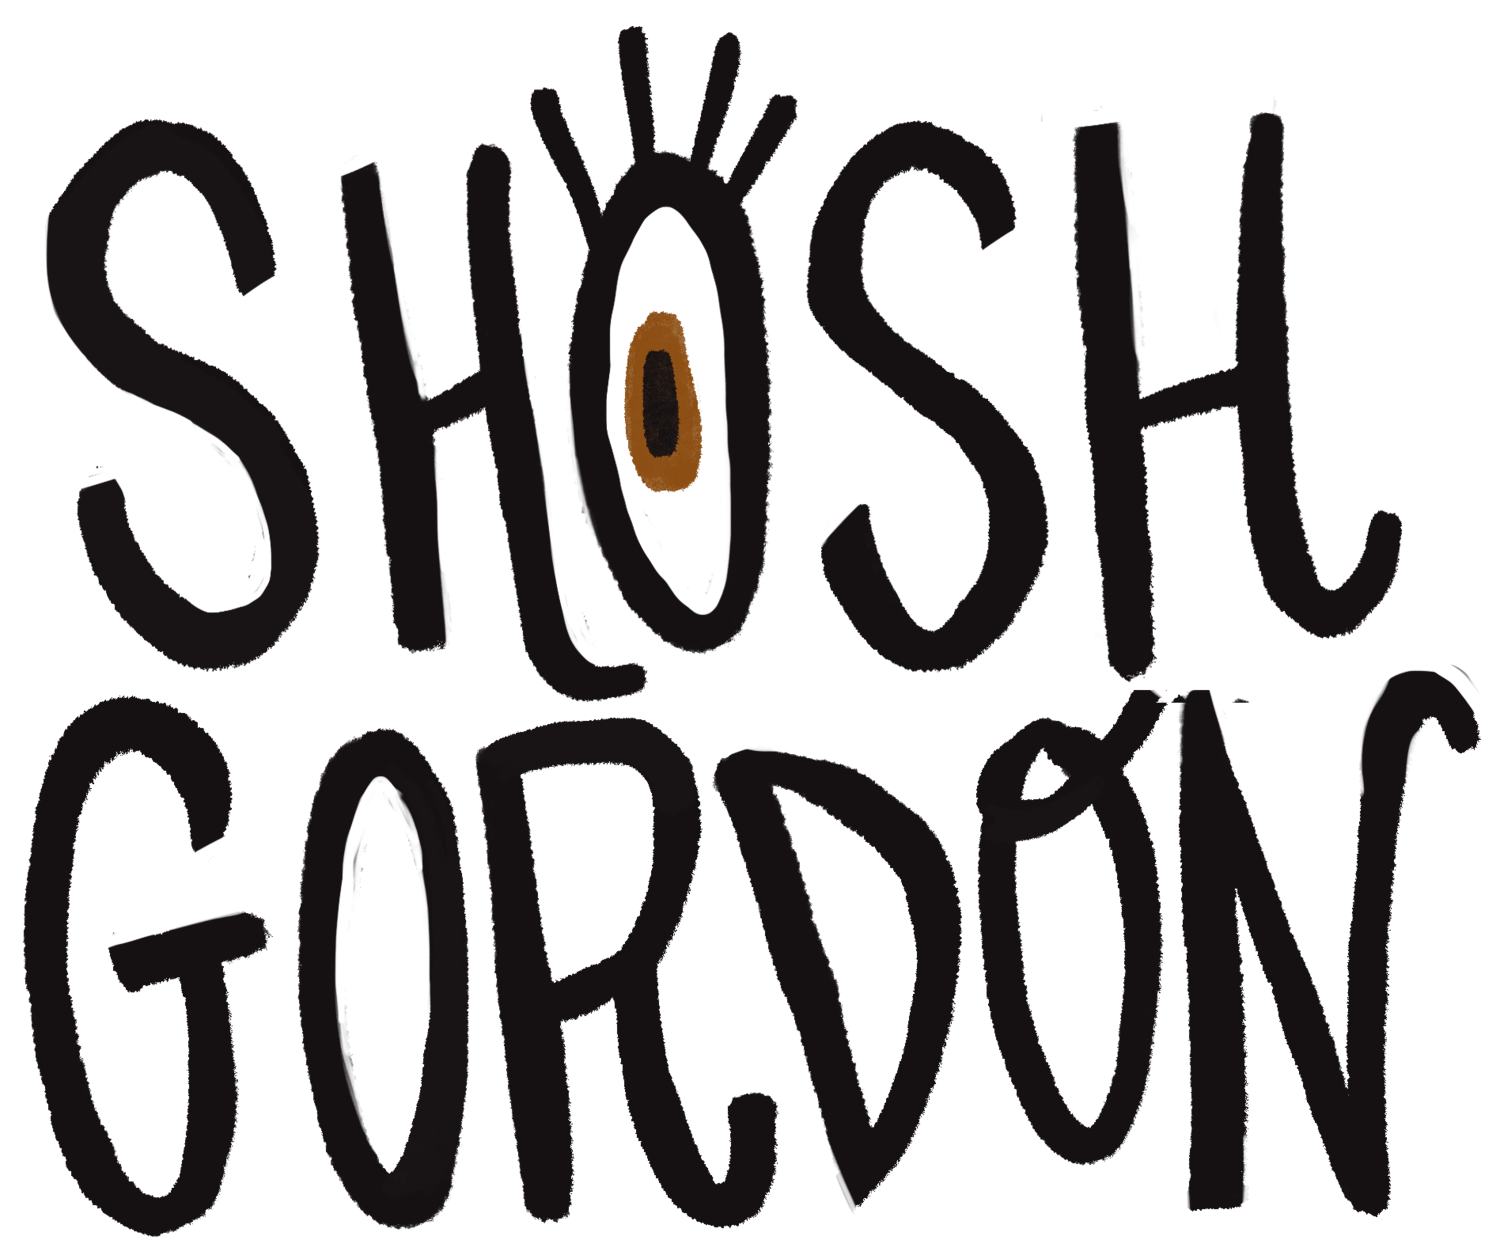 Shoshana Gordon